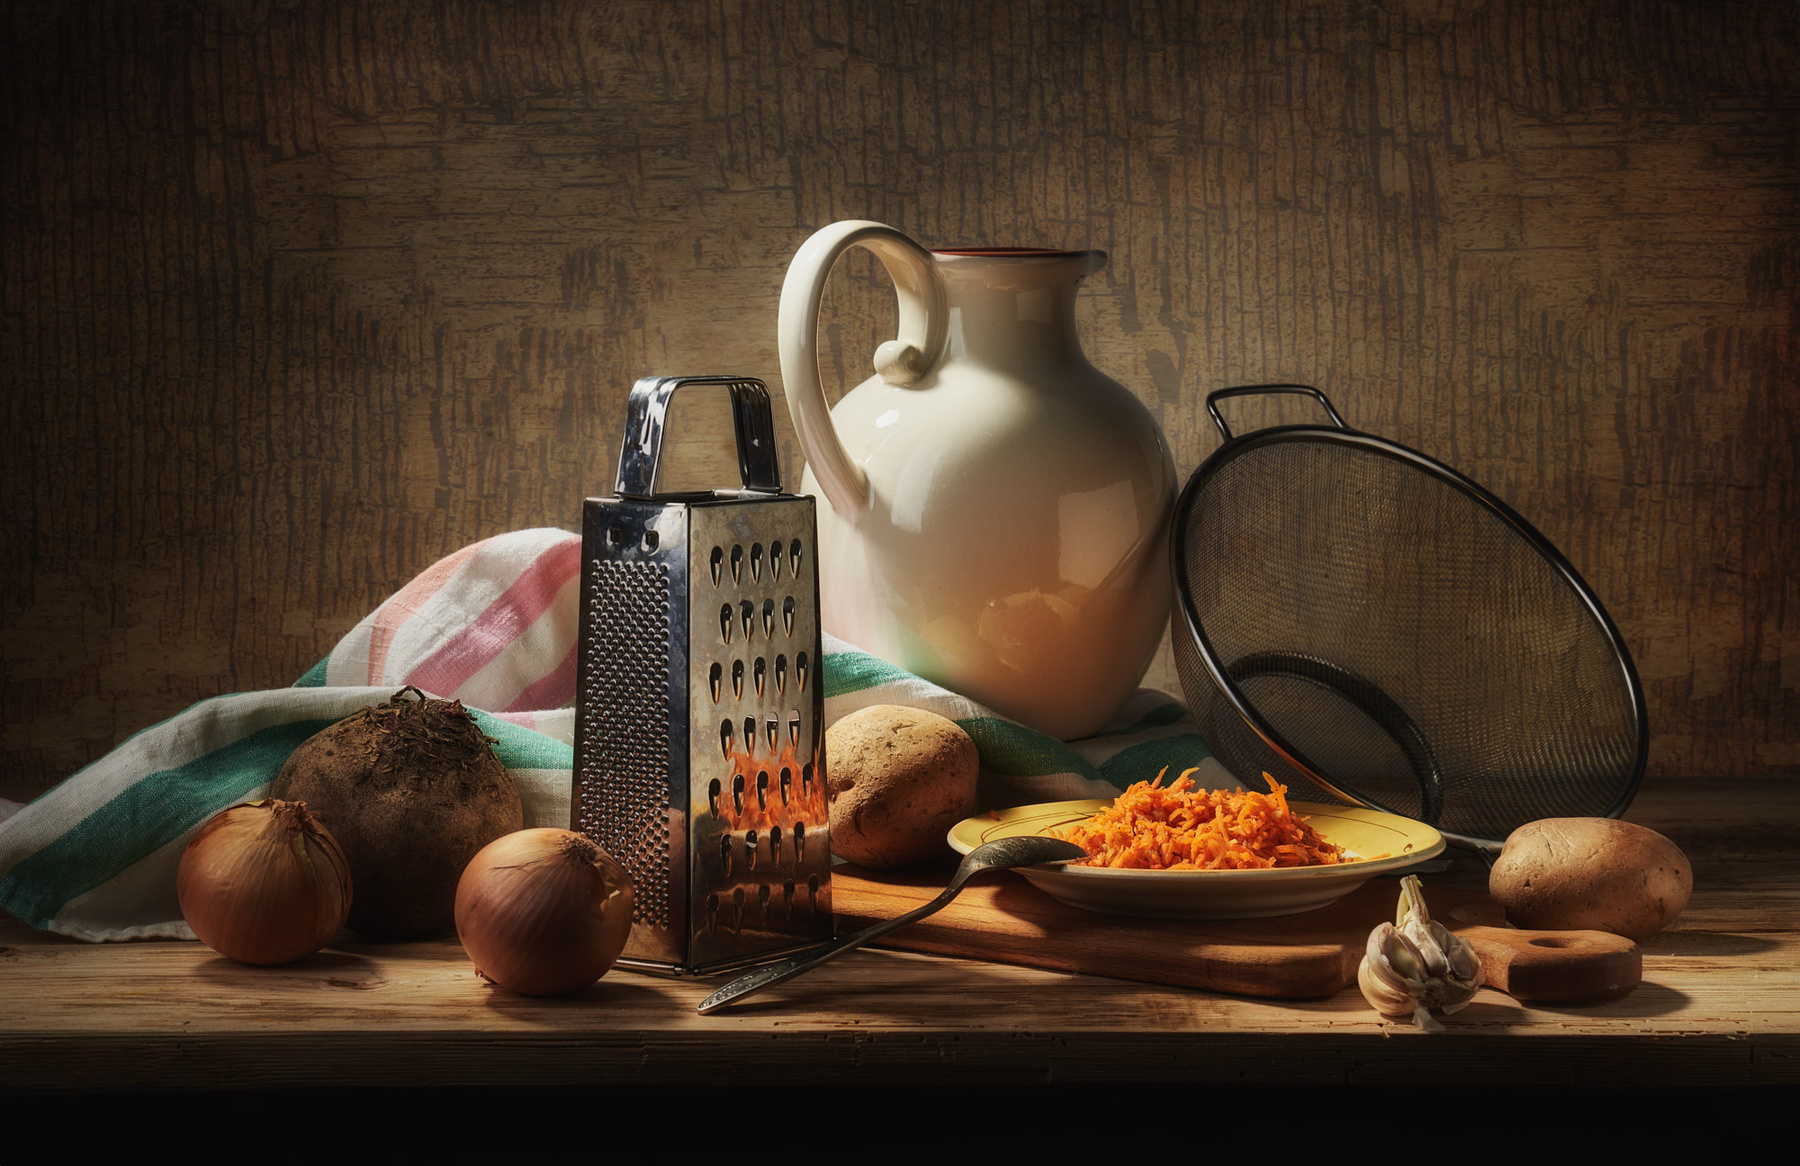 Кухонные хлопоты натюрморт композиция постановка сцена еда посуда овощи